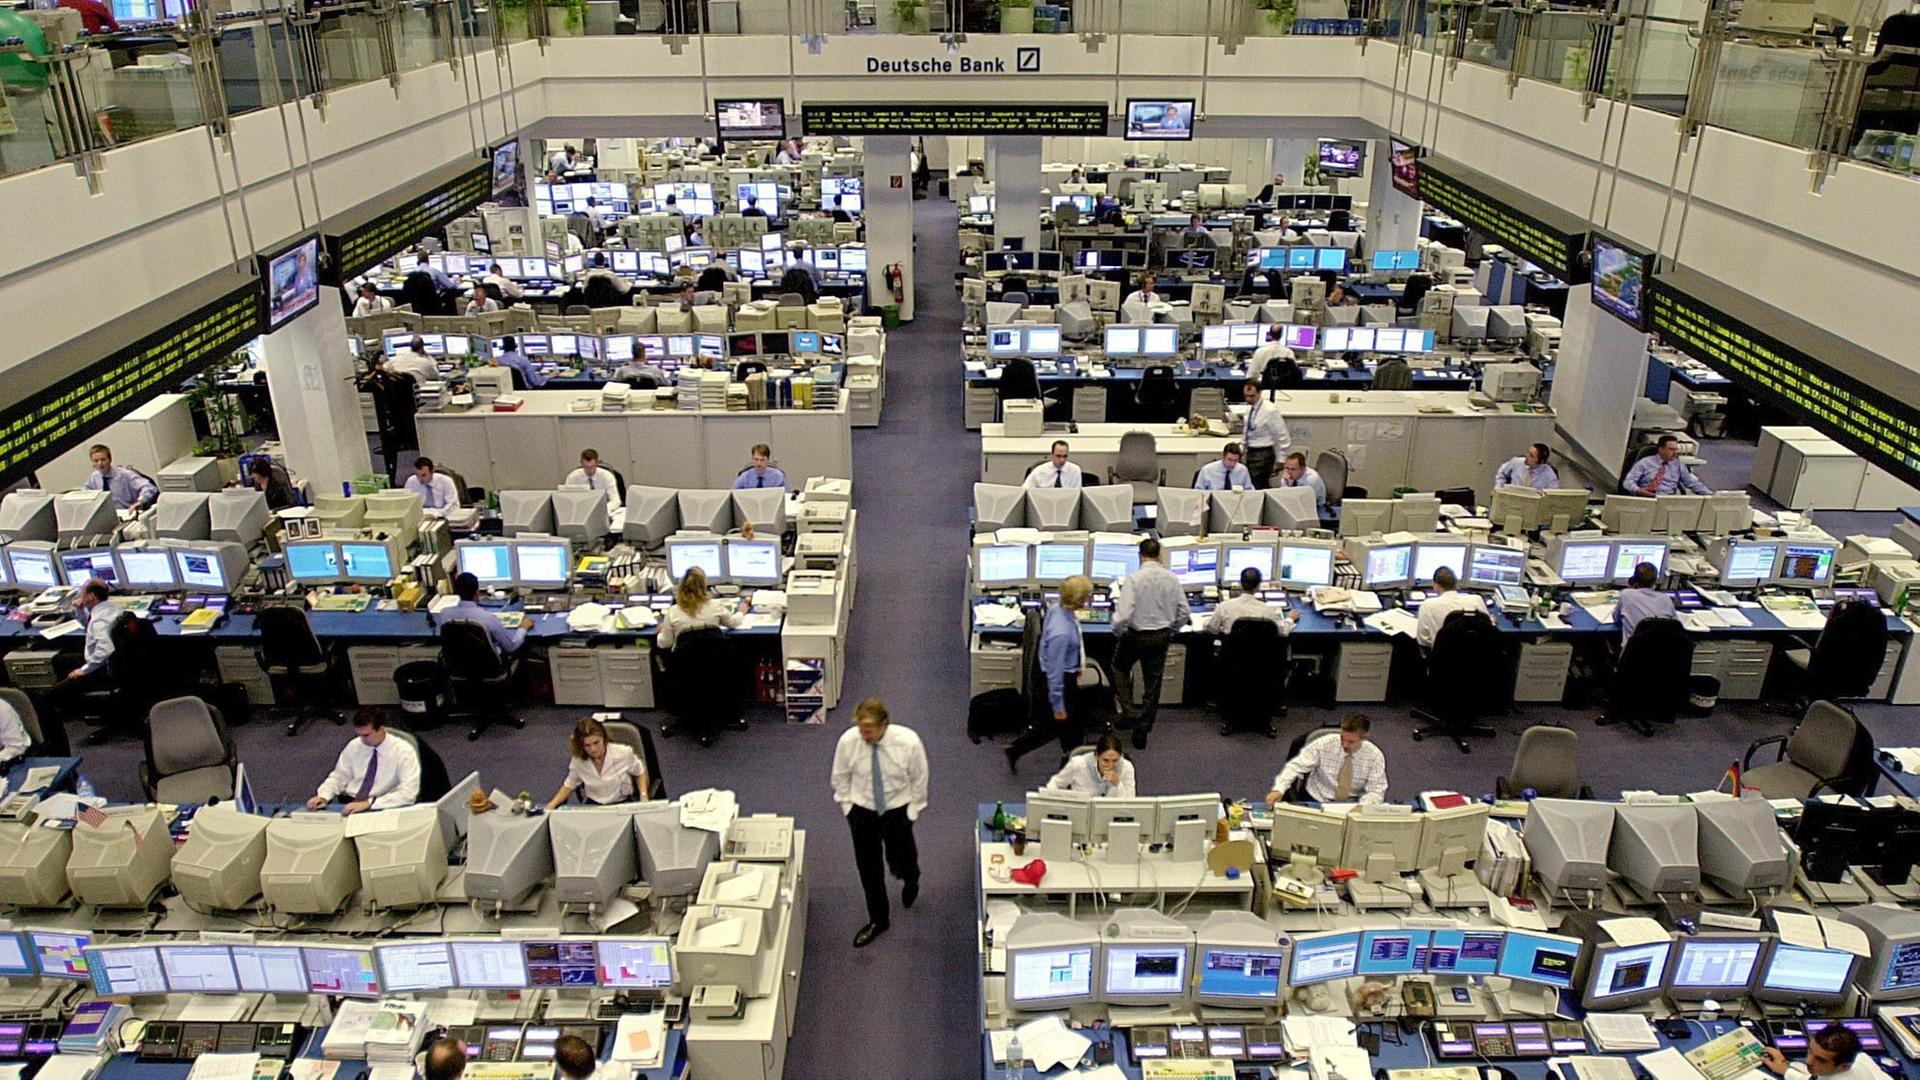 Bankkaufmänner an ihren Computerarbeitsplätzen des Großraumbüros im Händlerraum der Deutschen Bank in Frankfurt am Main, aufgenommen am 20.8.2003.